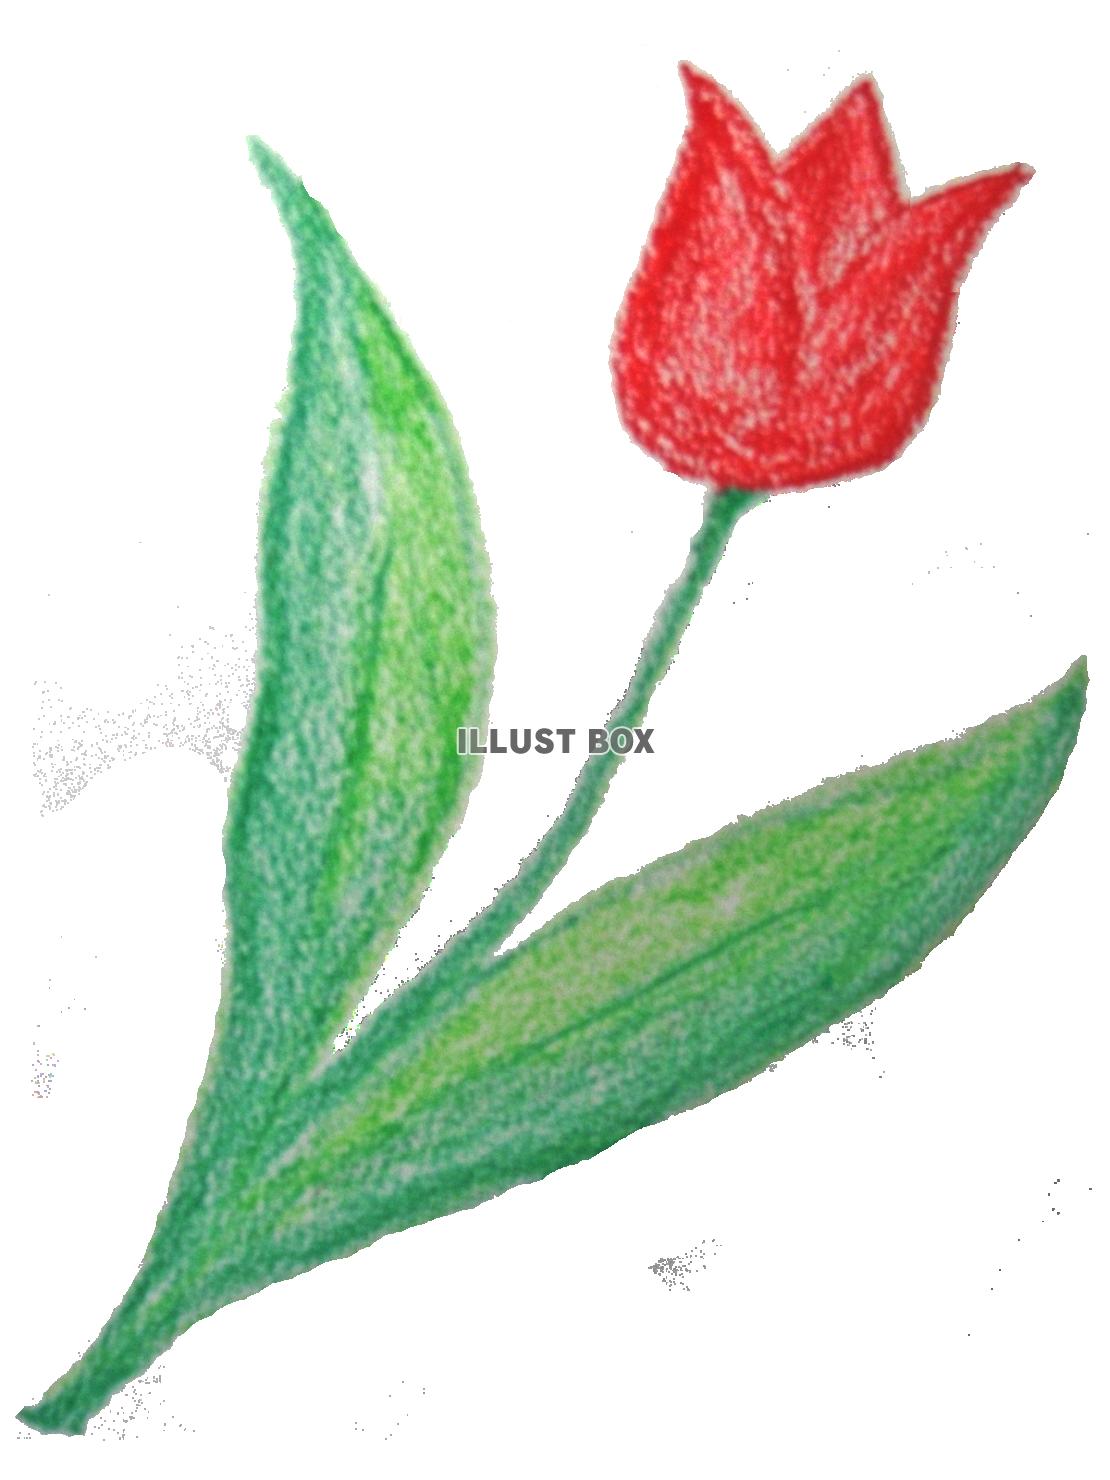 クレヨンで描いたチューリップの花模様イラストpng透過